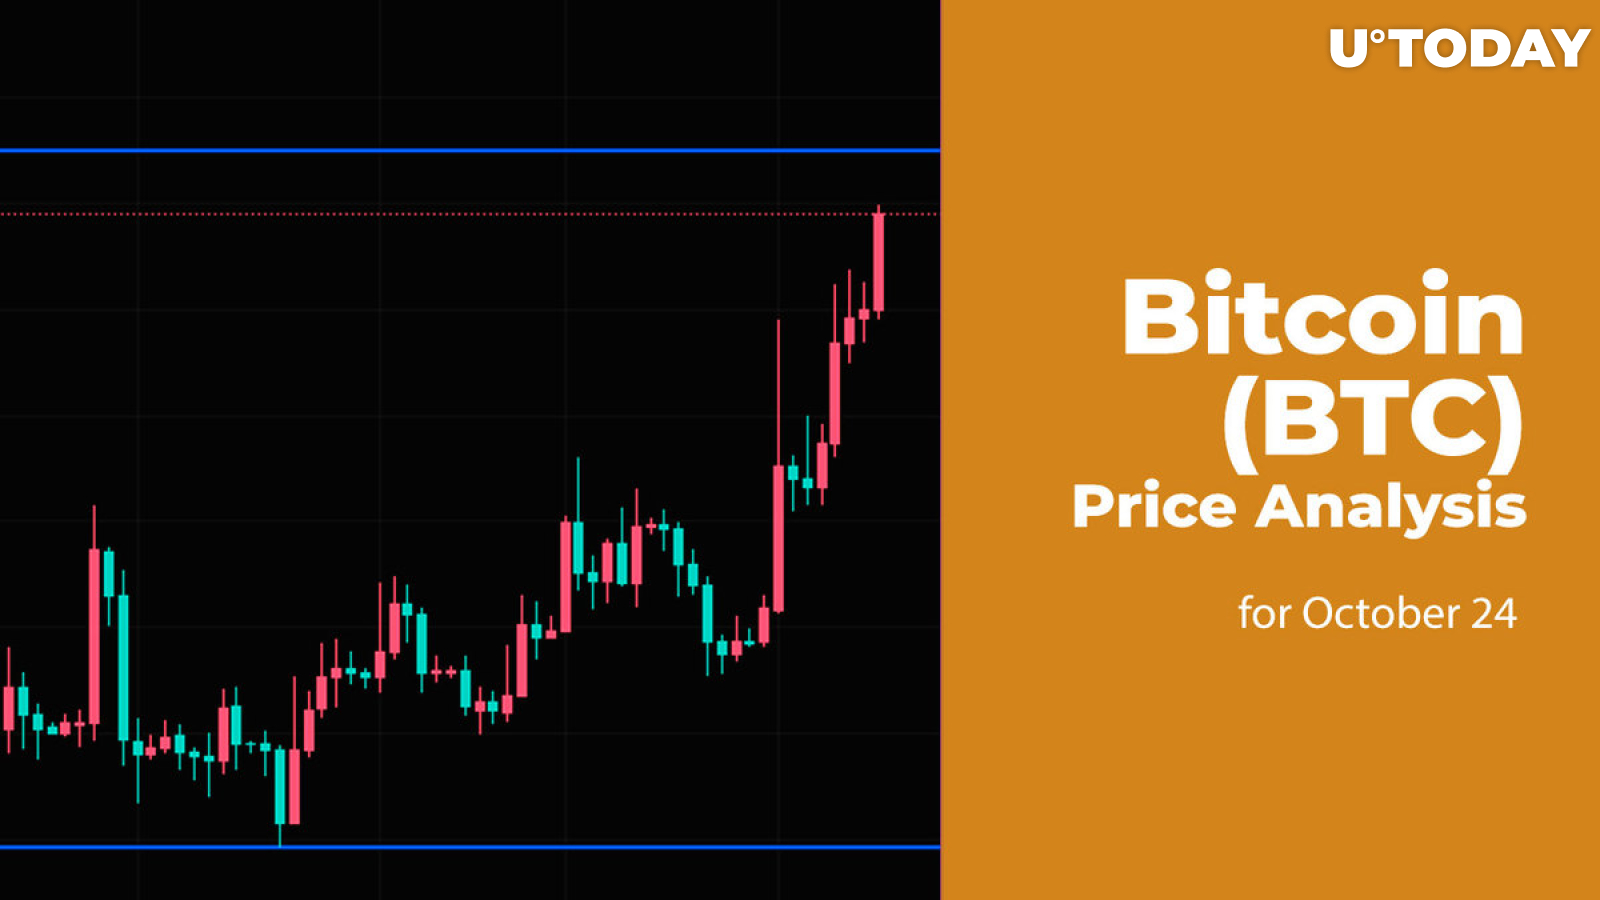 Bitcoin (BTC) Price Analysis for October 24